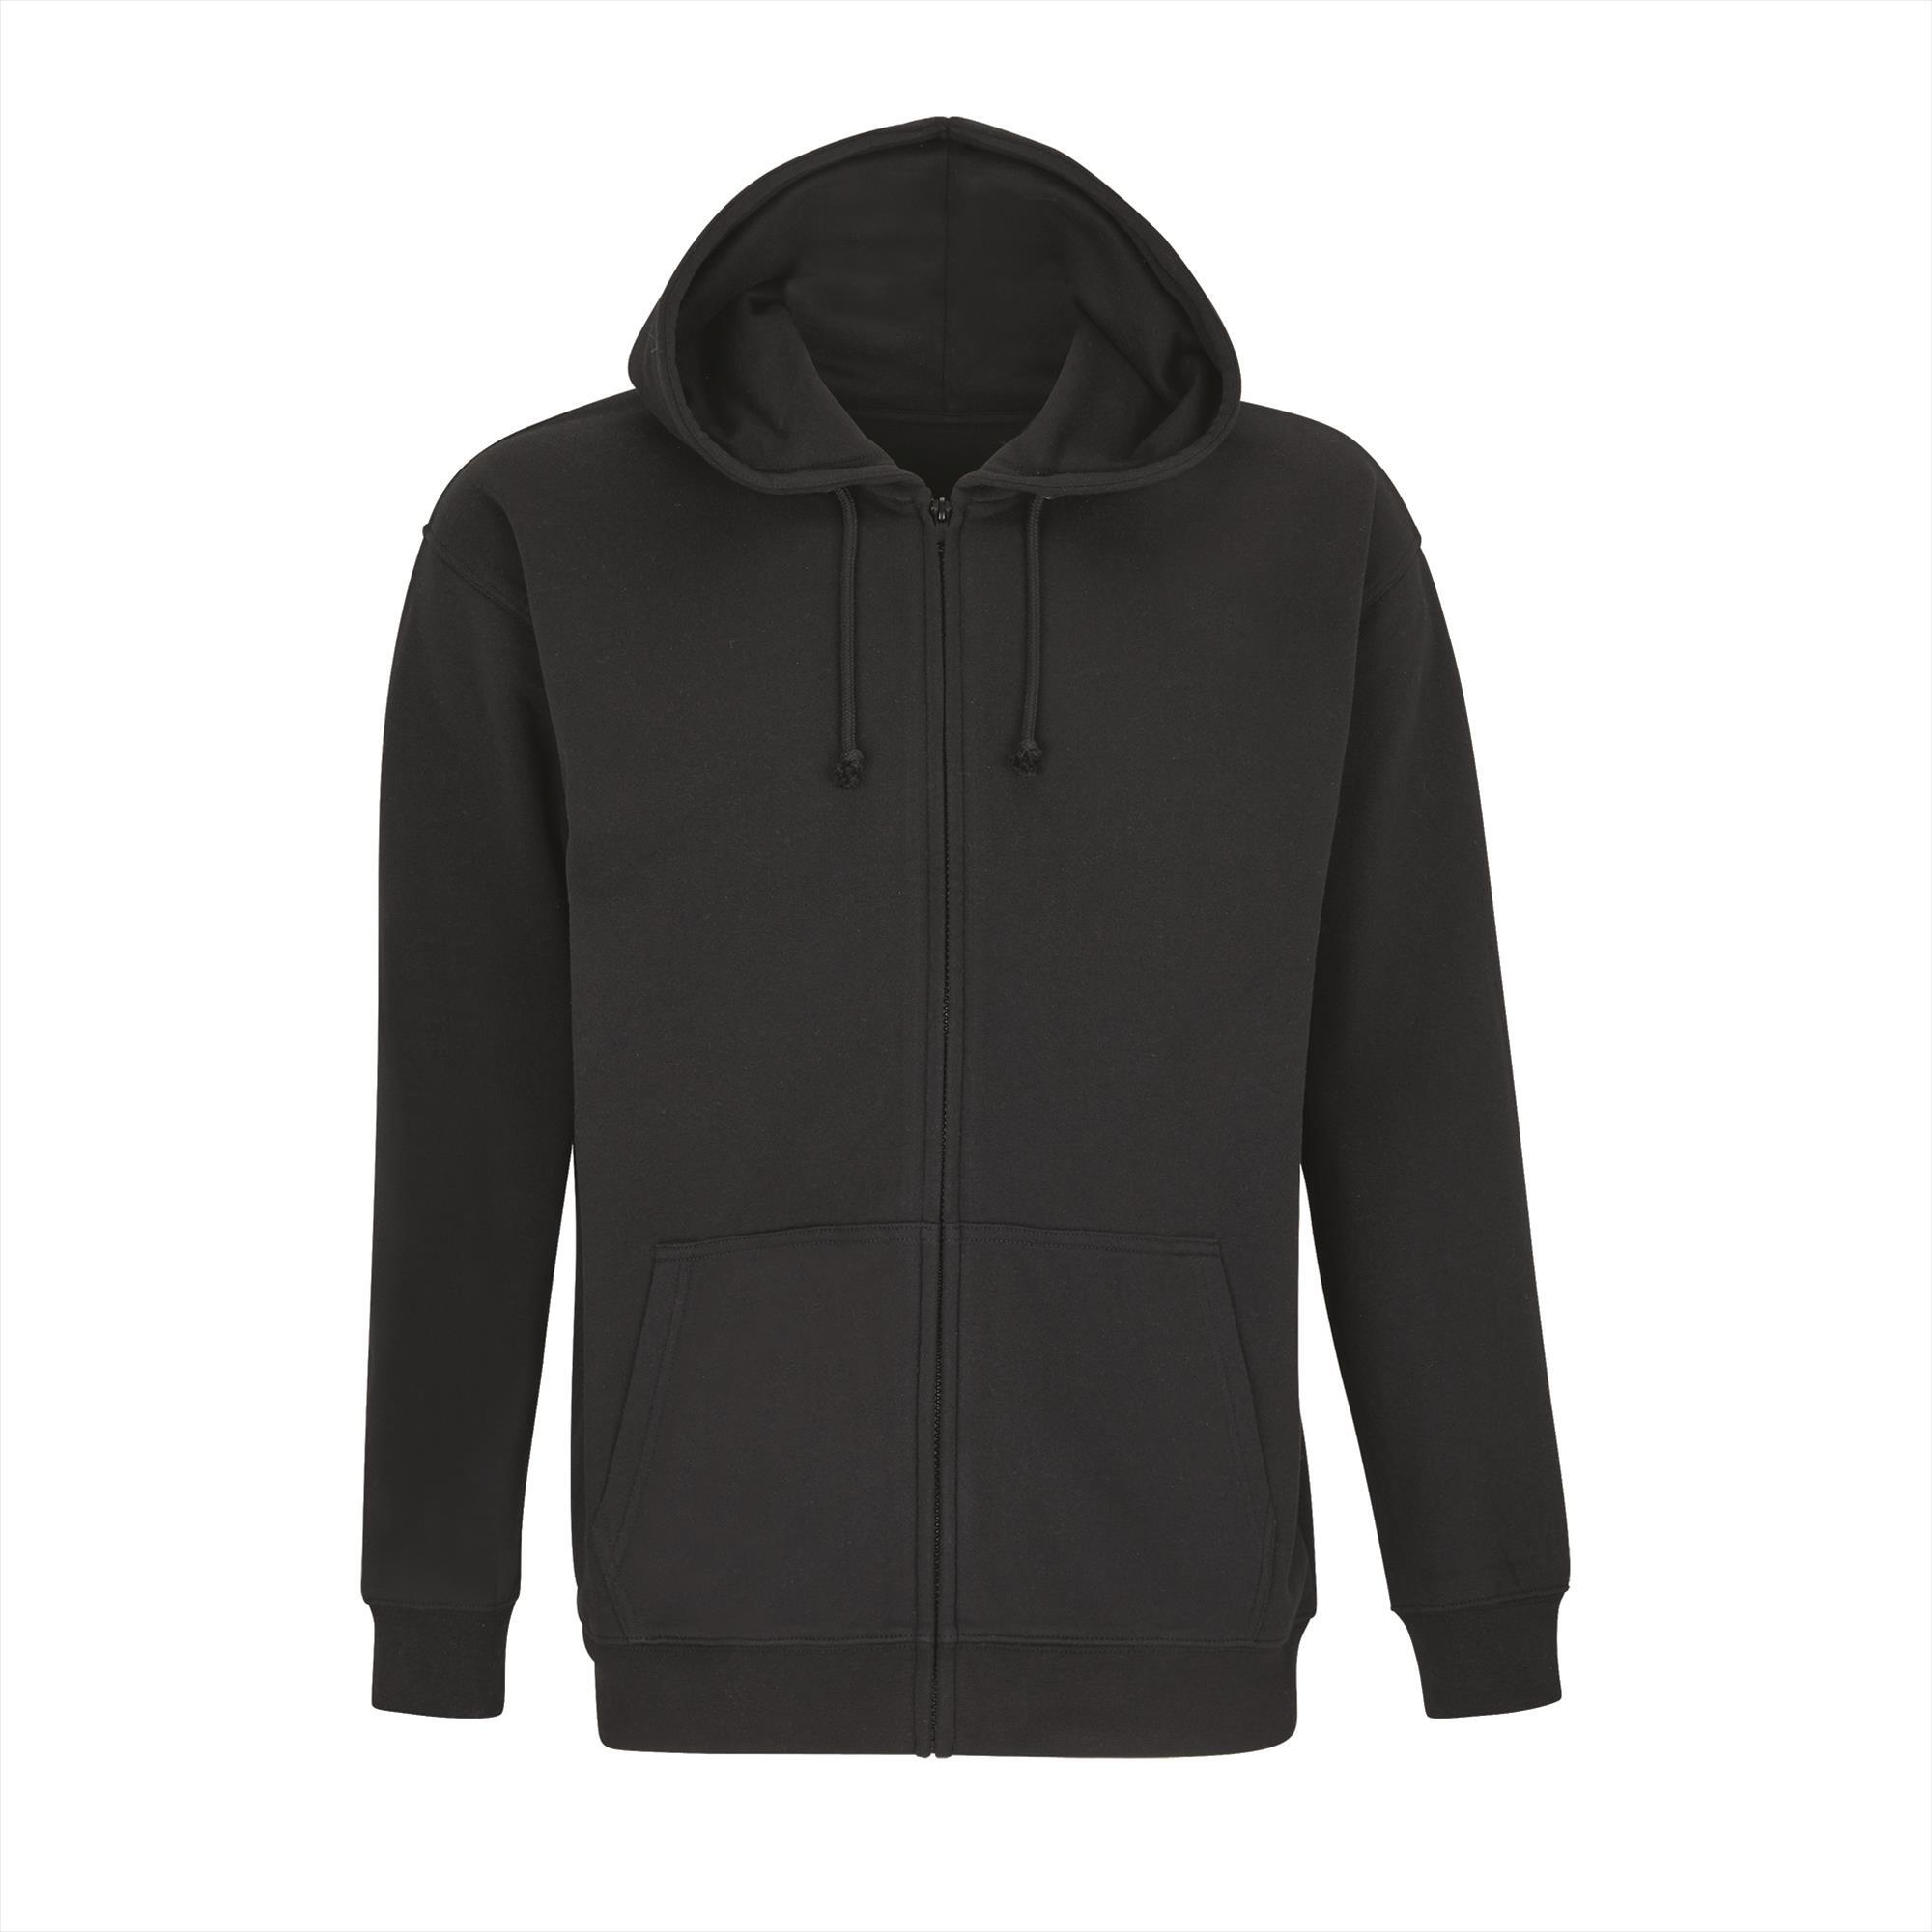 Hoodie comfortabele unisex hoodie zwart